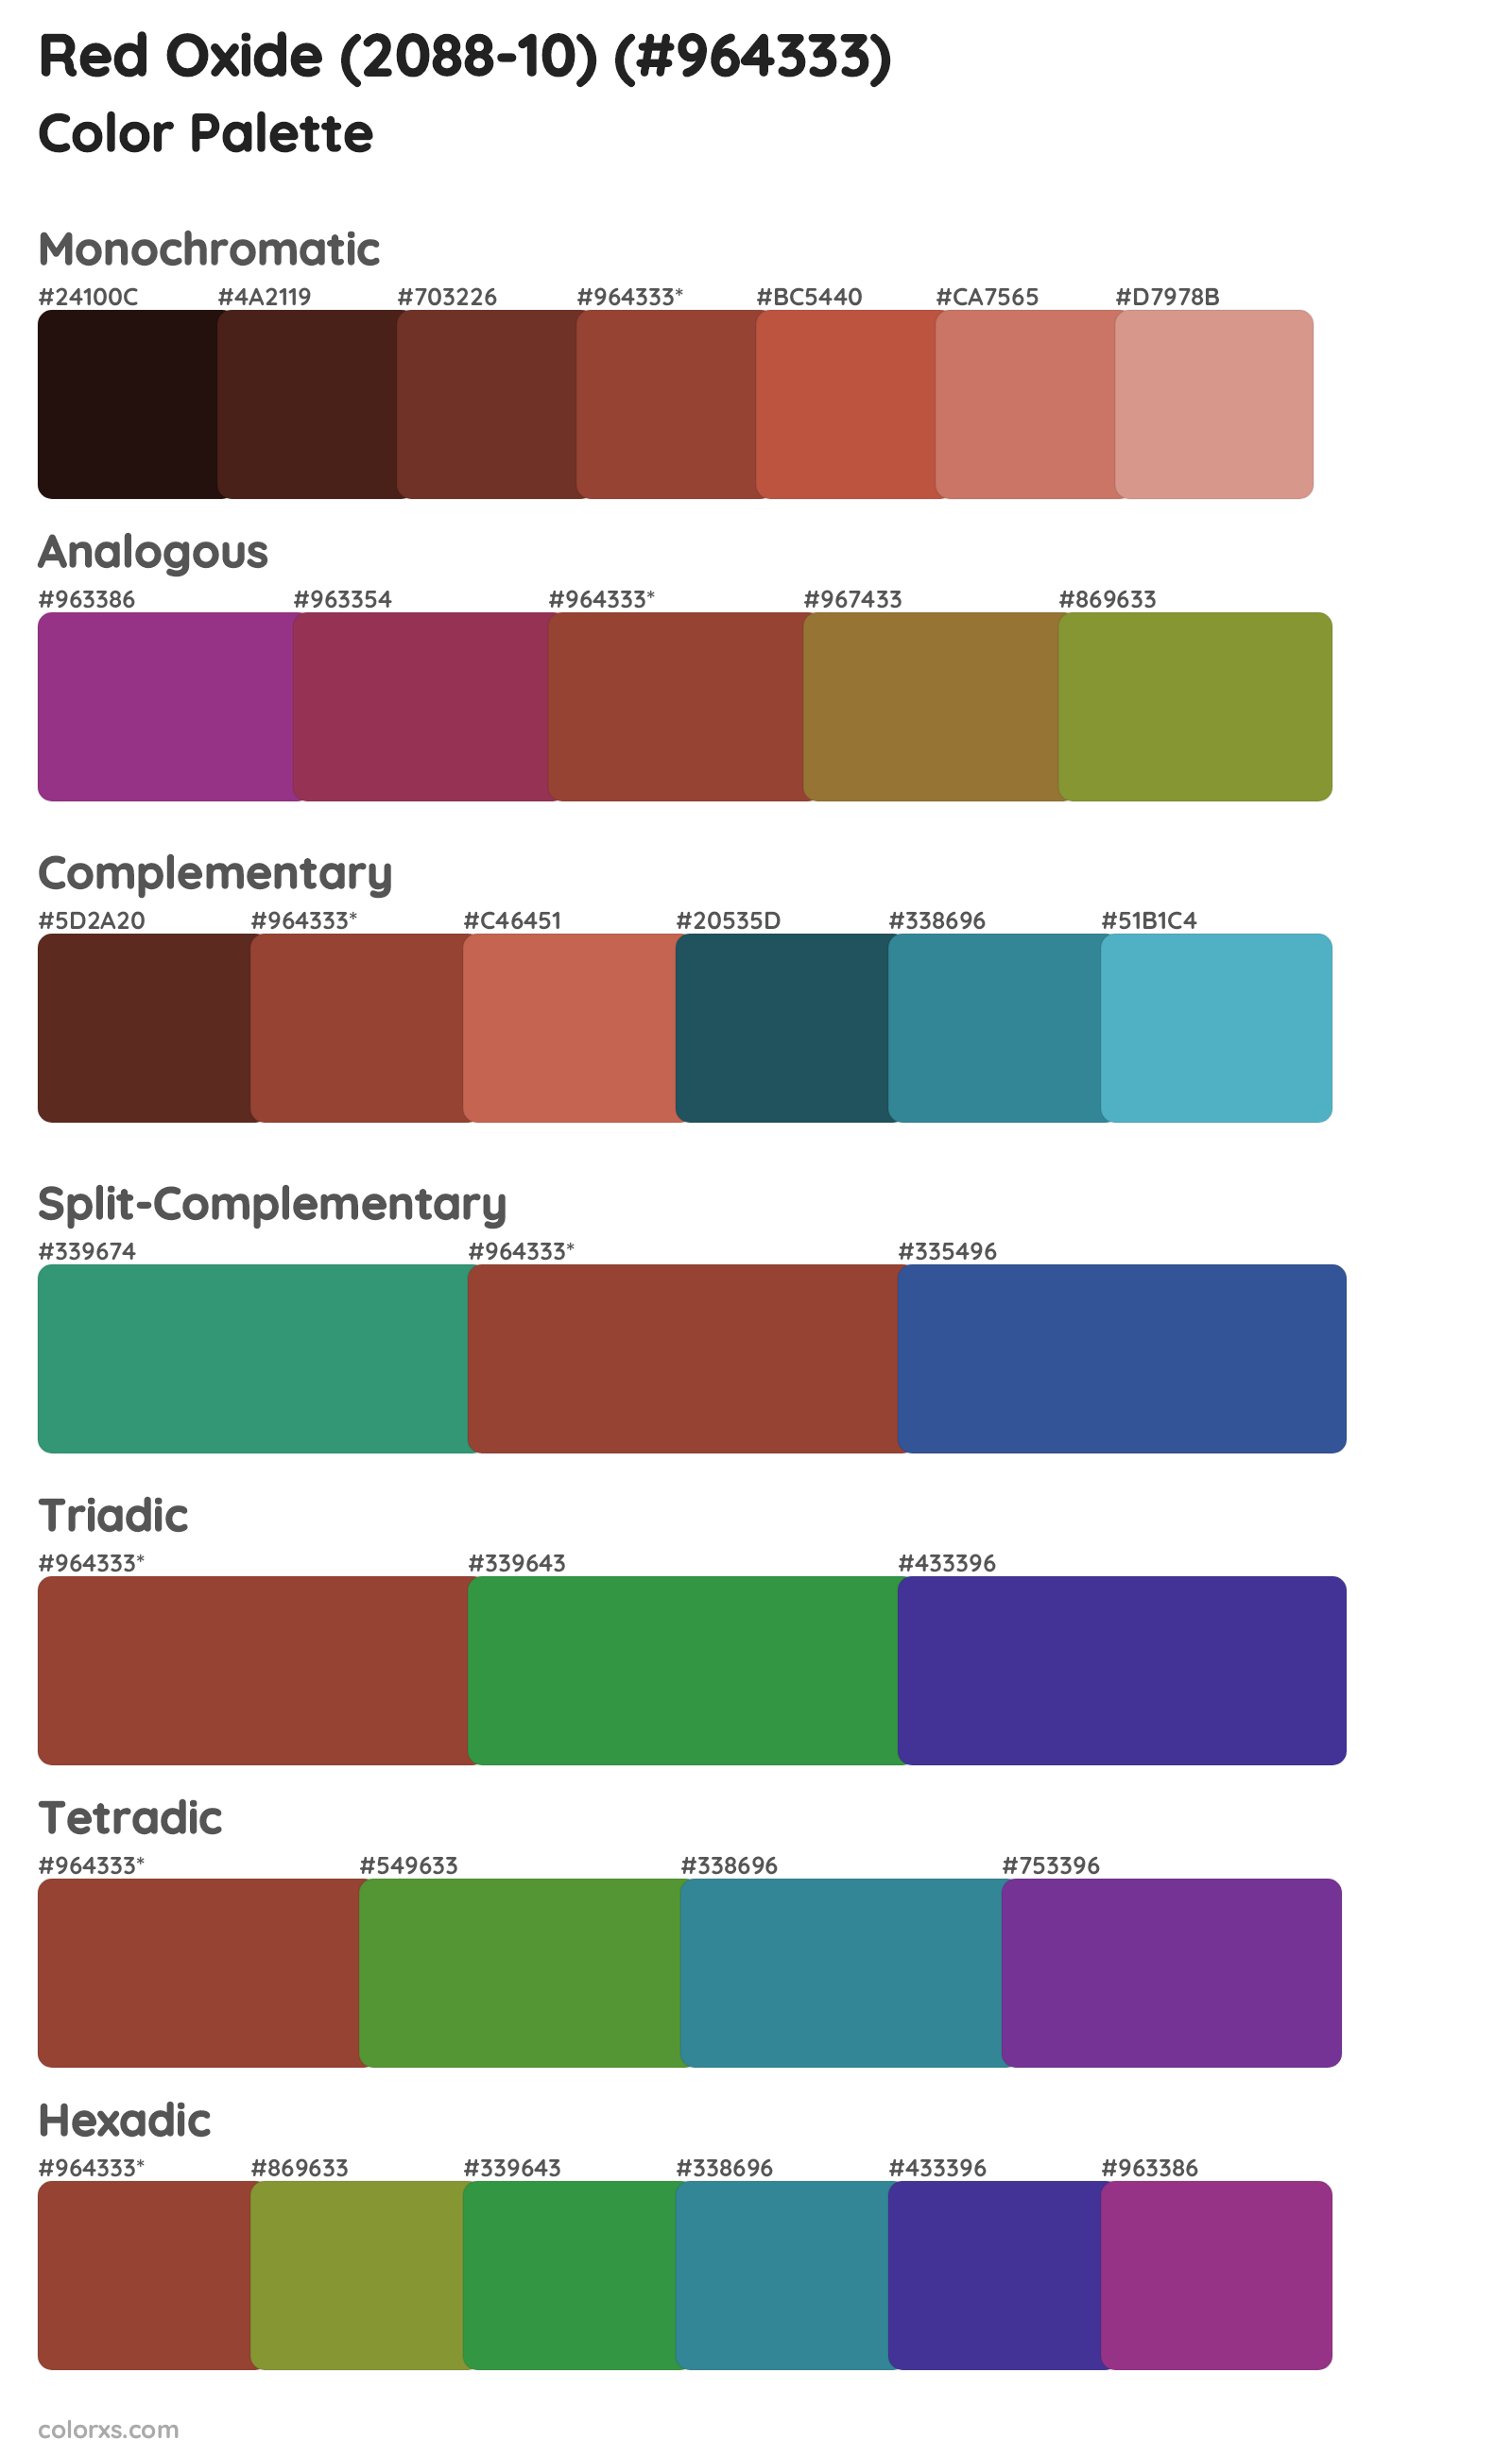 Red Oxide (2088-10) Color Scheme Palettes